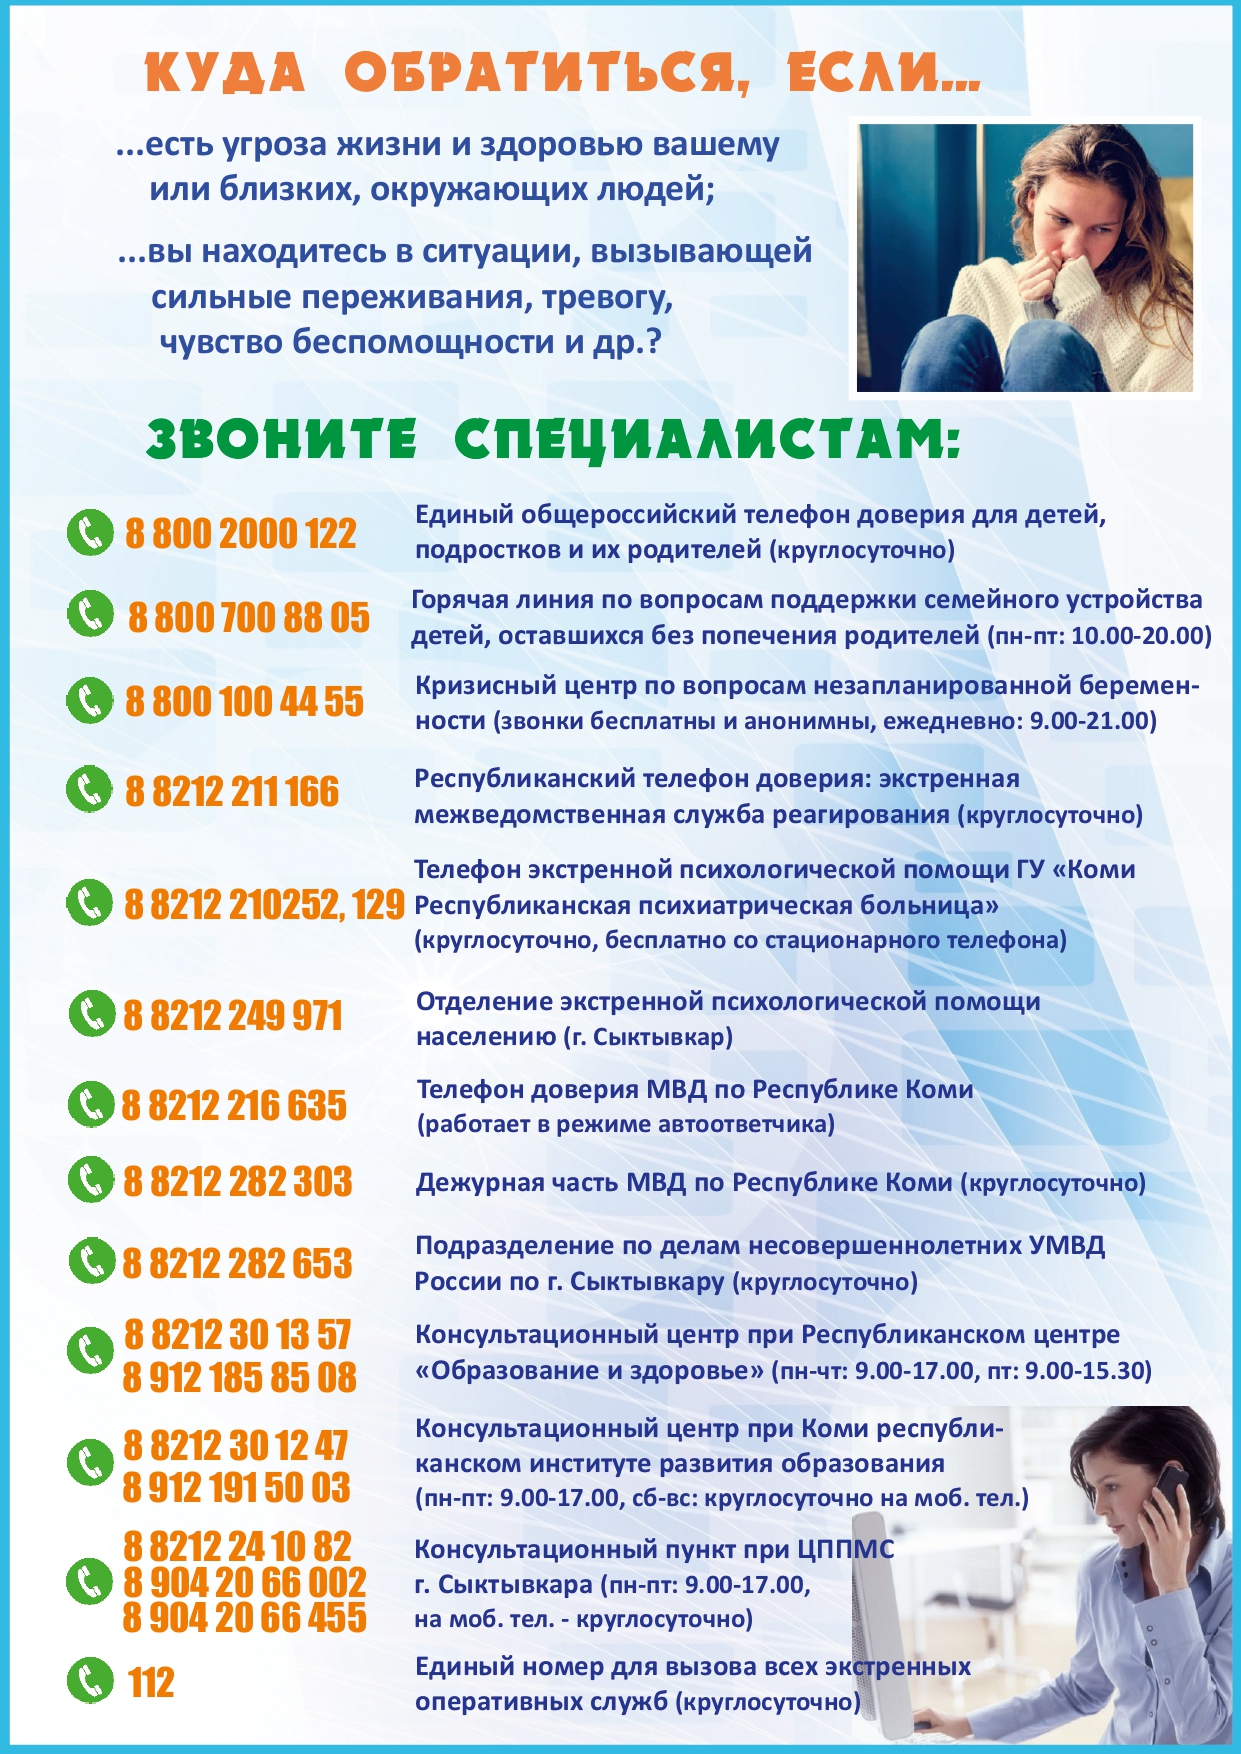 Общероссийском телефоне доверия (8-800-2000-122).